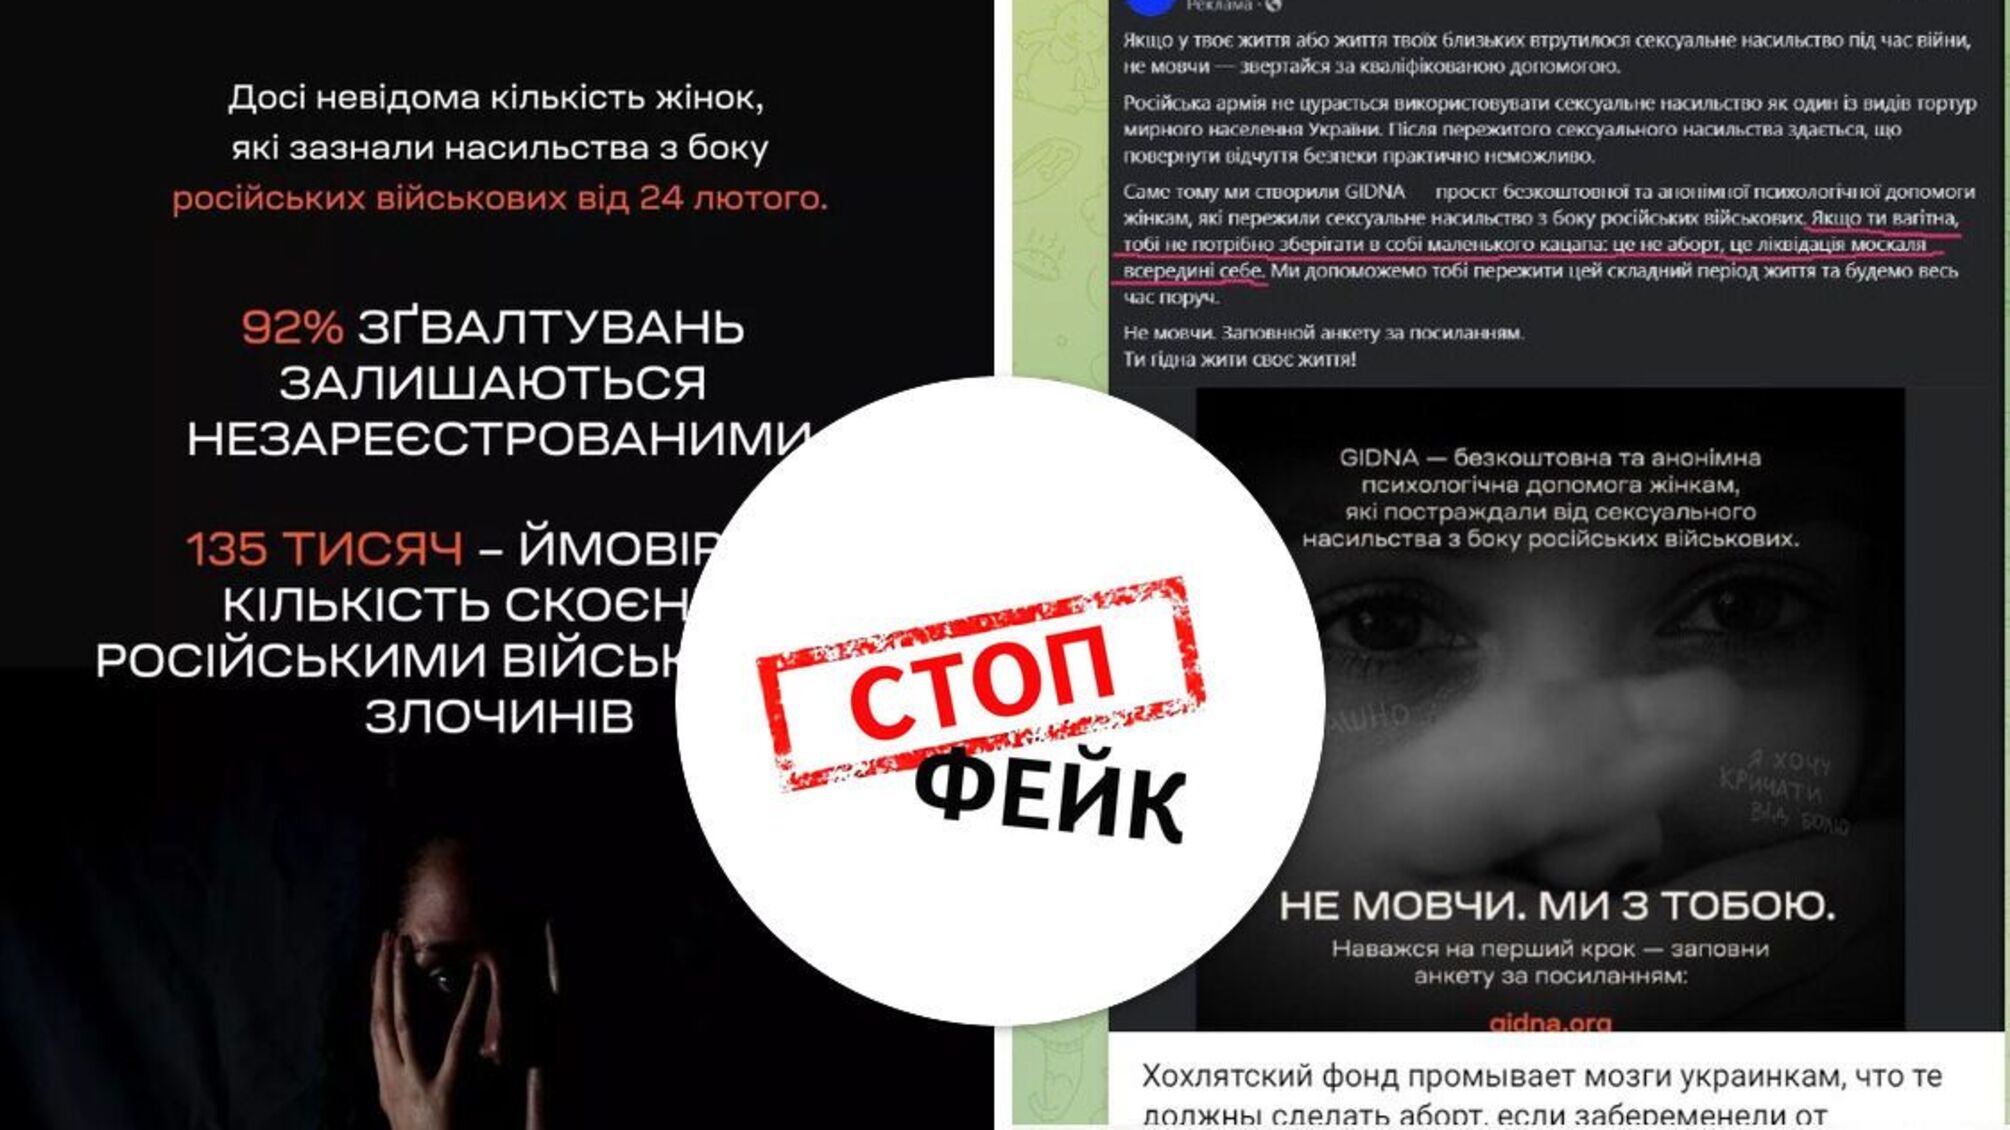 Російська пропаганда використала ім'я проєкту GIDNA, який надає допомогу жінкам, що пережили насильство від окупантів